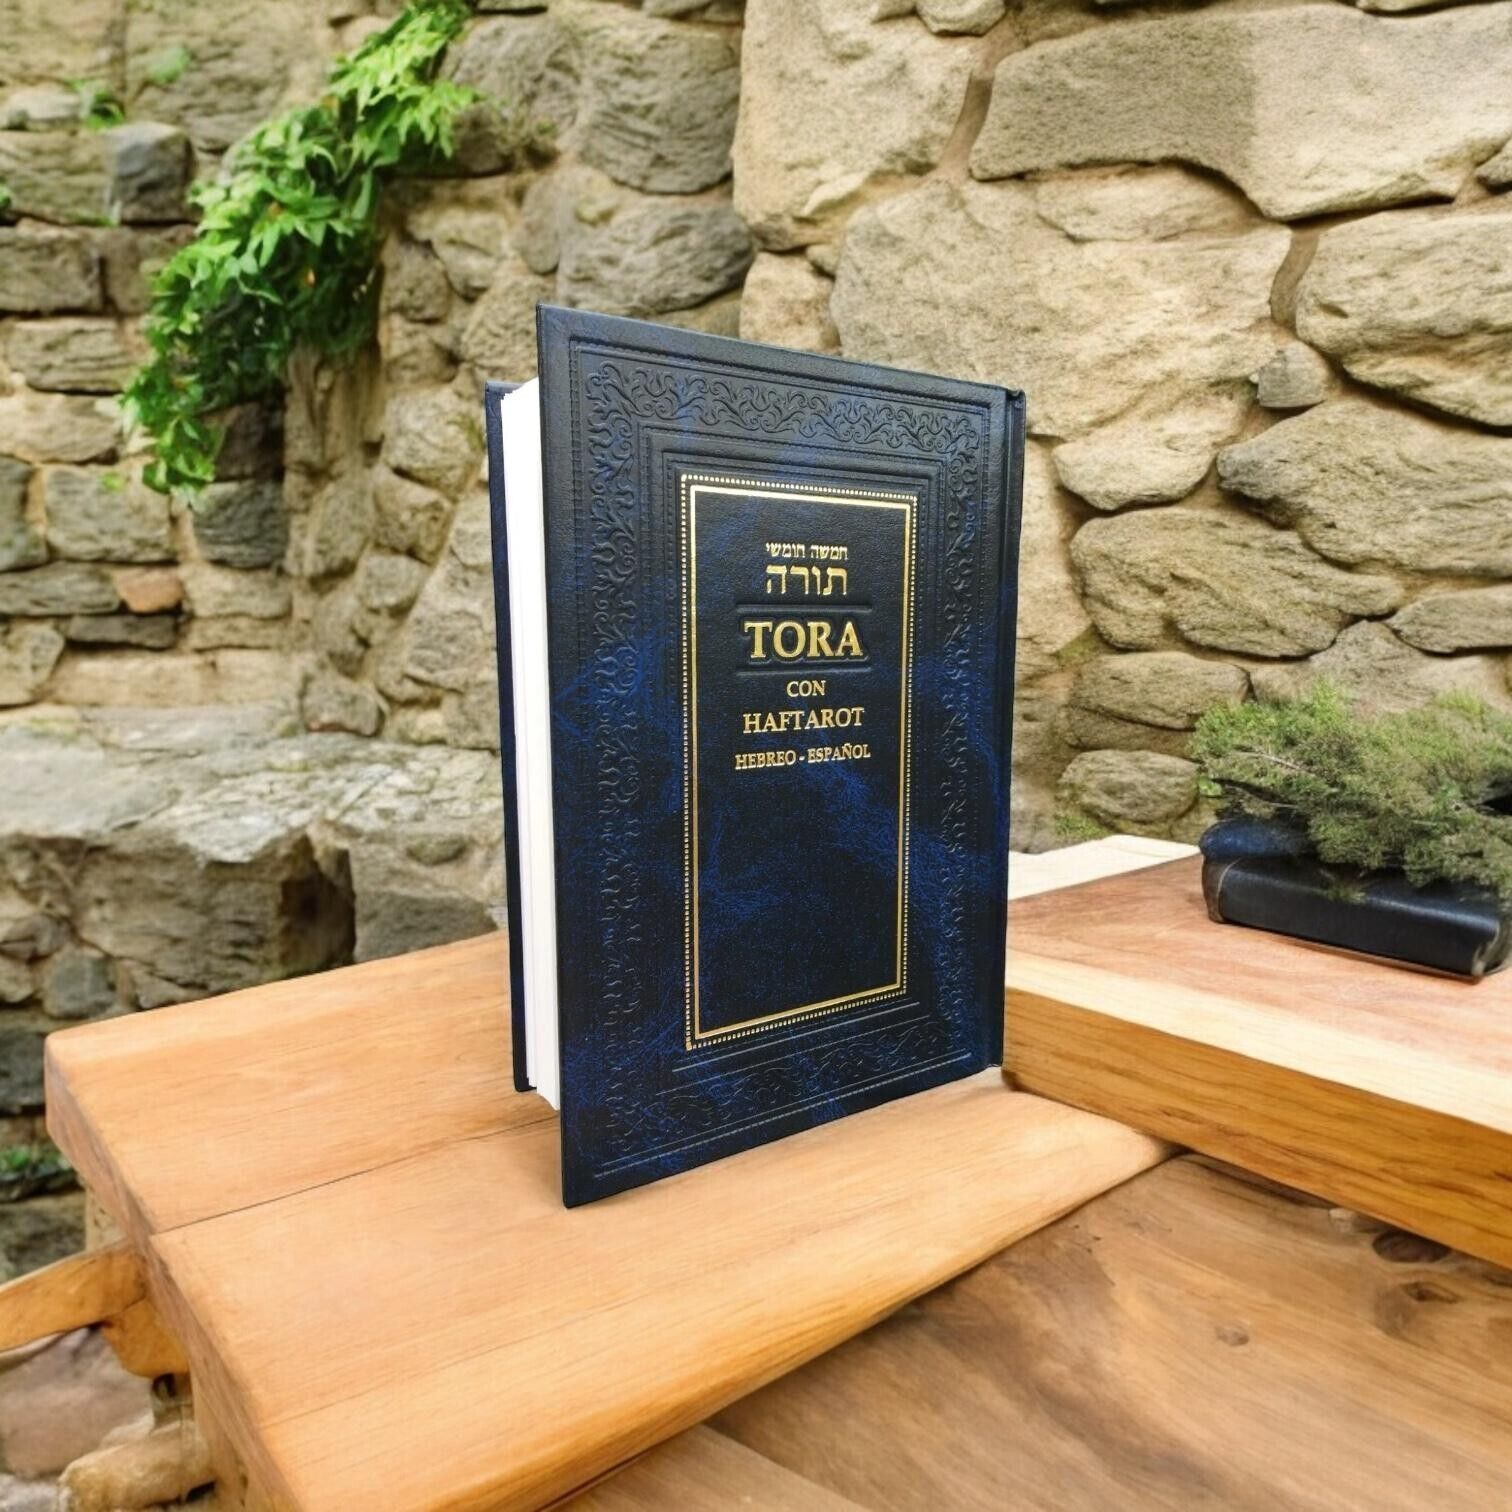 Hebrew Espanol TORAH Pentateuch and Haftarot Holy Bible Book Judaica israel